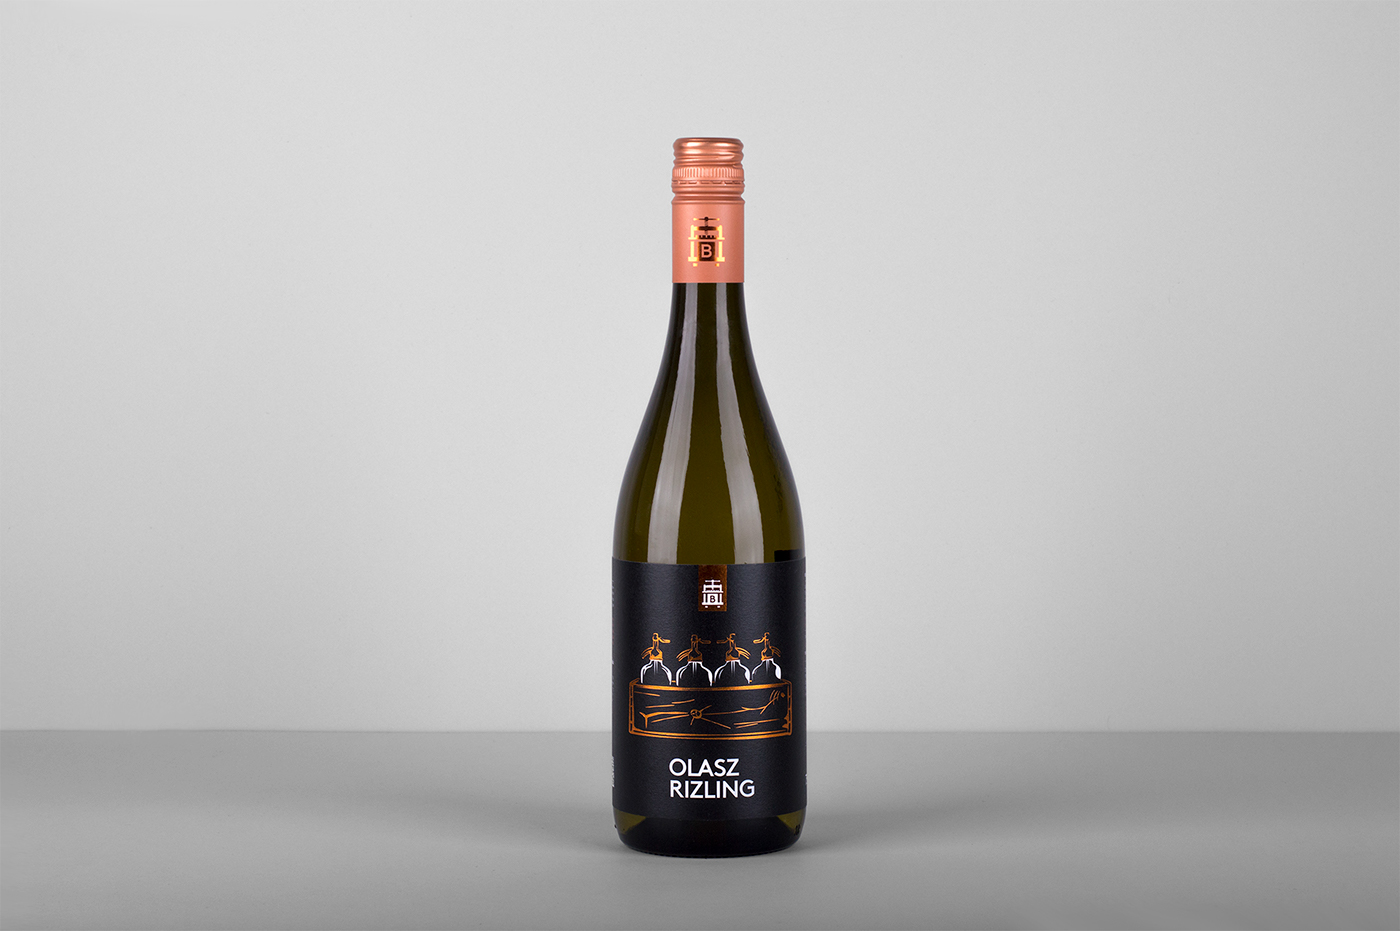 wine balga winery bor borászat frizzante Label wine label design bor címke